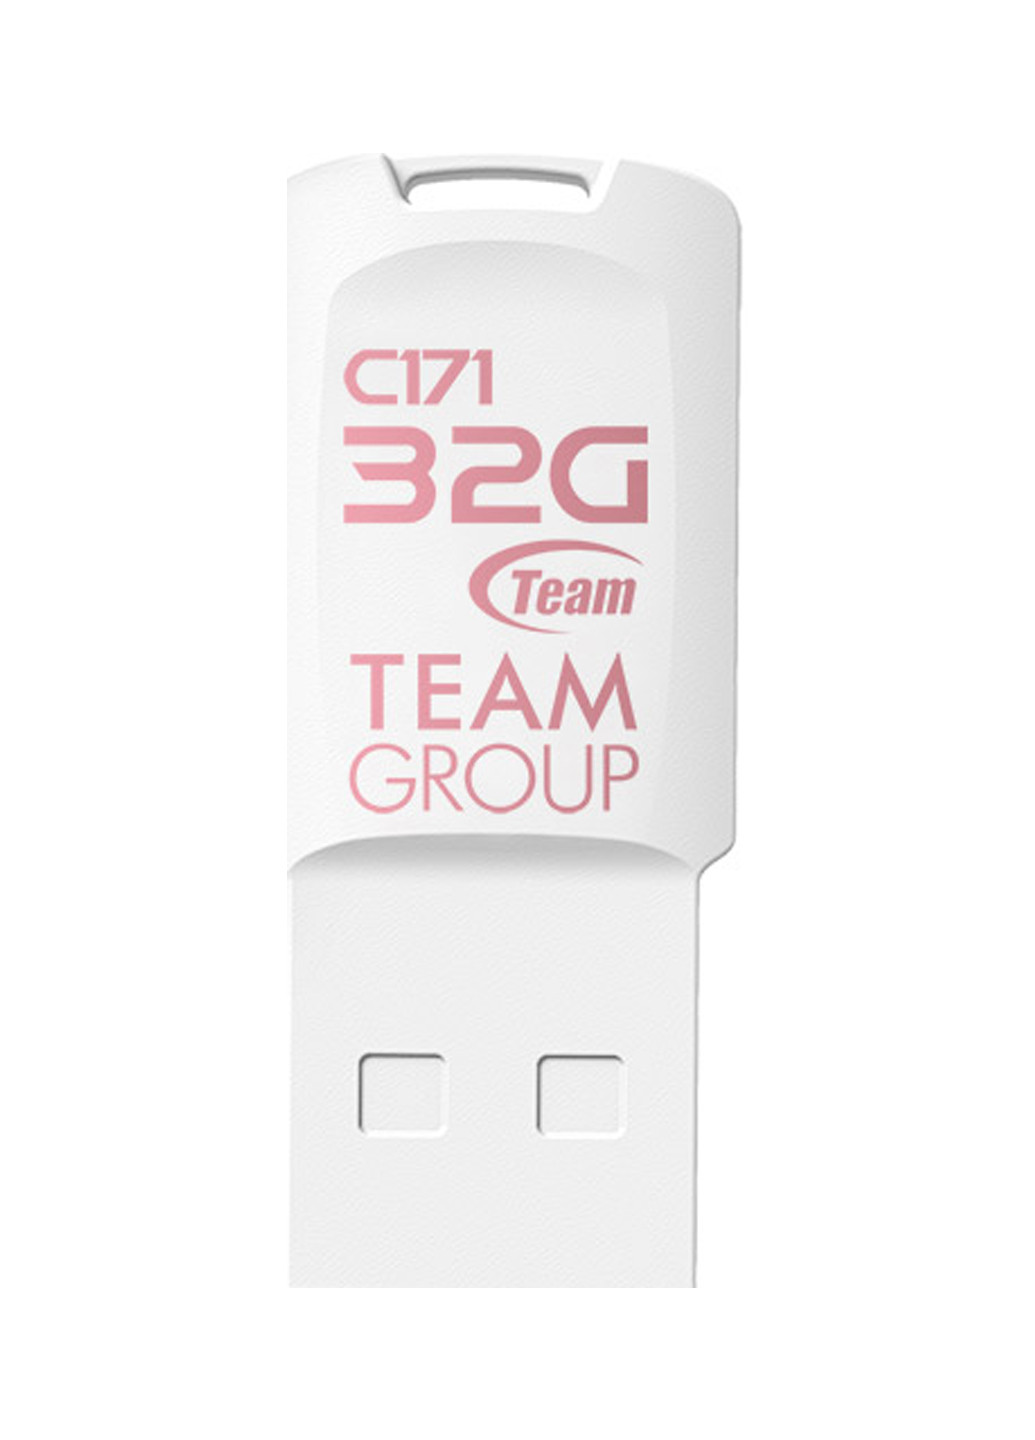 Флеш память USB C171 32GB White (TC17132GW01) Team флеш память usb team c171 32gb white (tc17132gw01) (134201764)